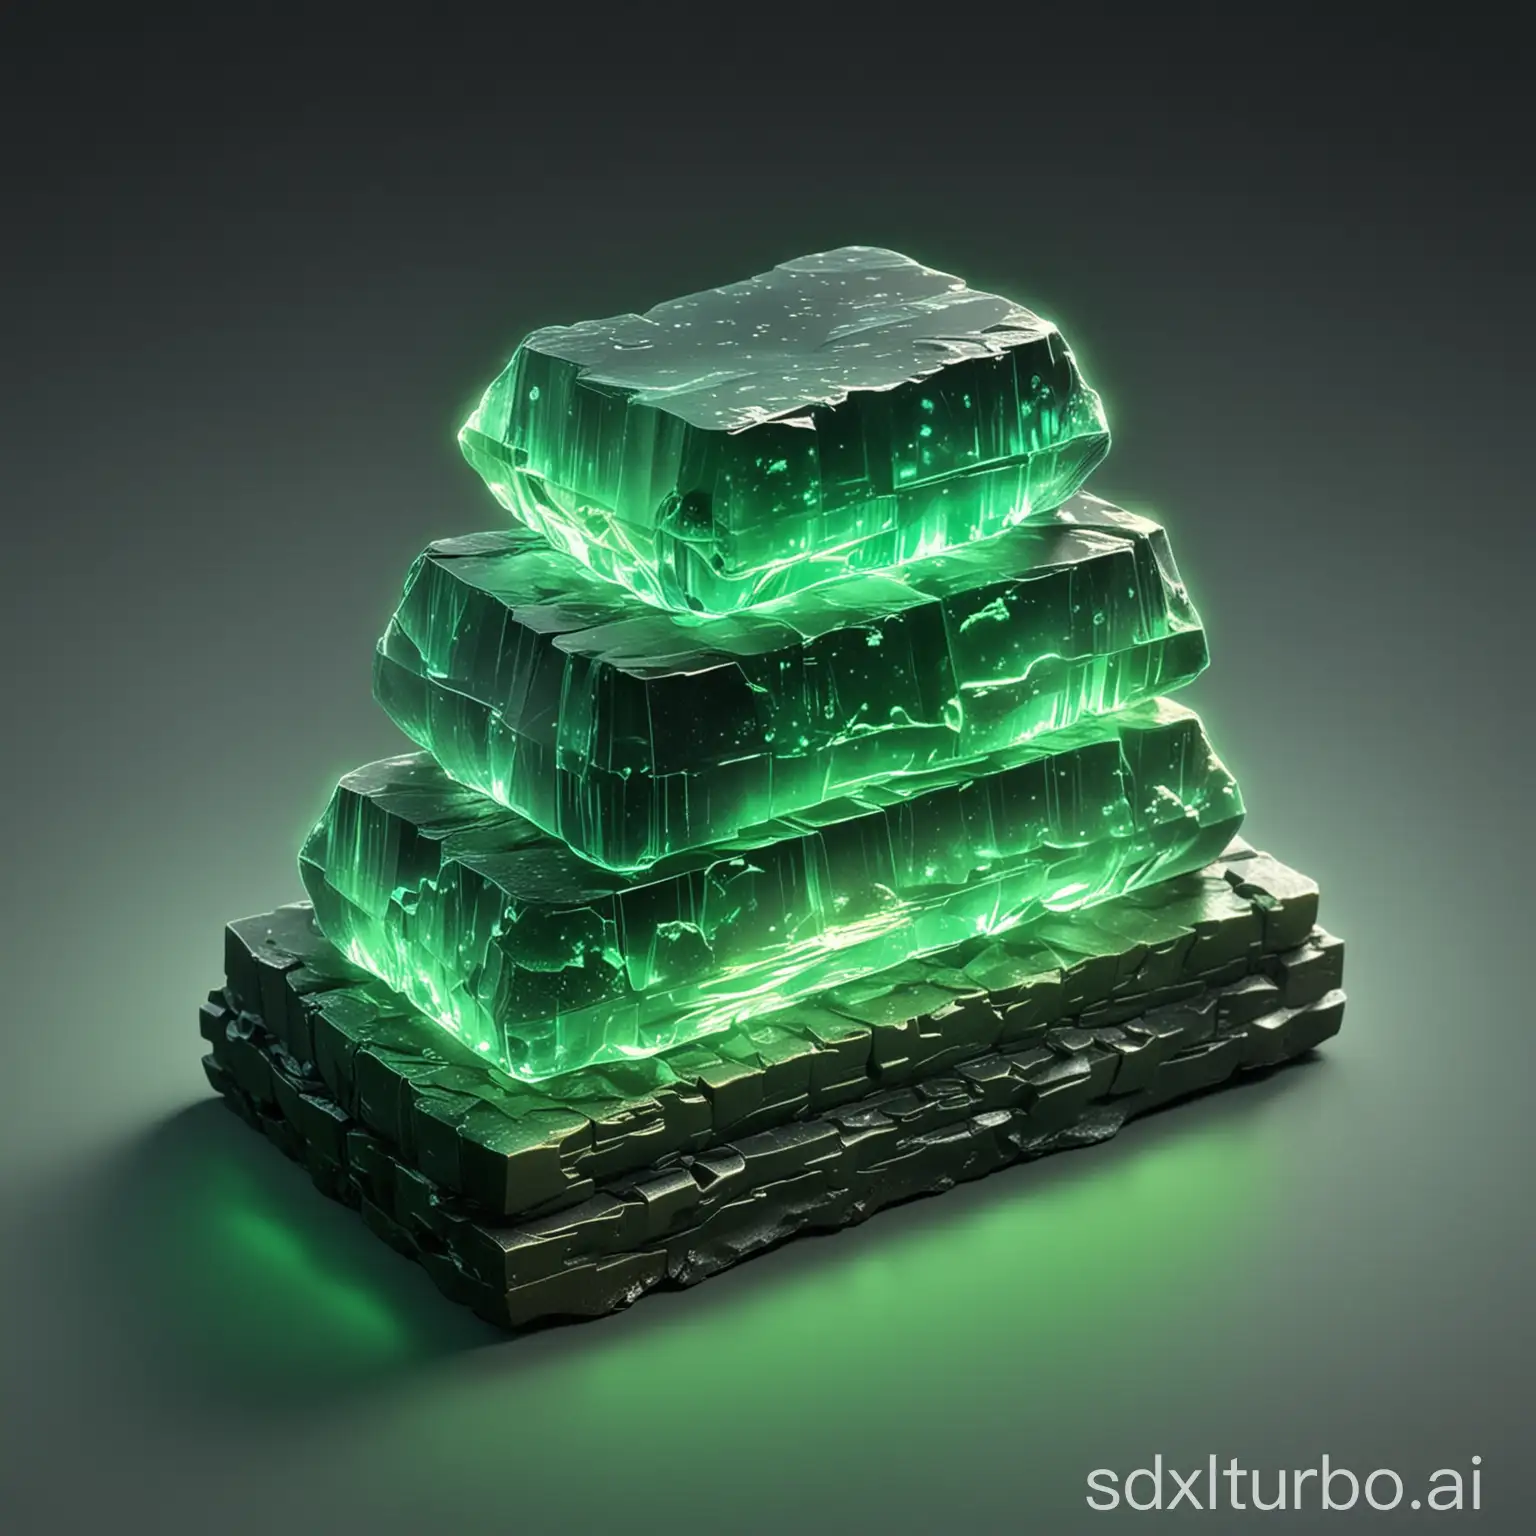 a green glowing crystal ingot stack, 3 ingots stacked